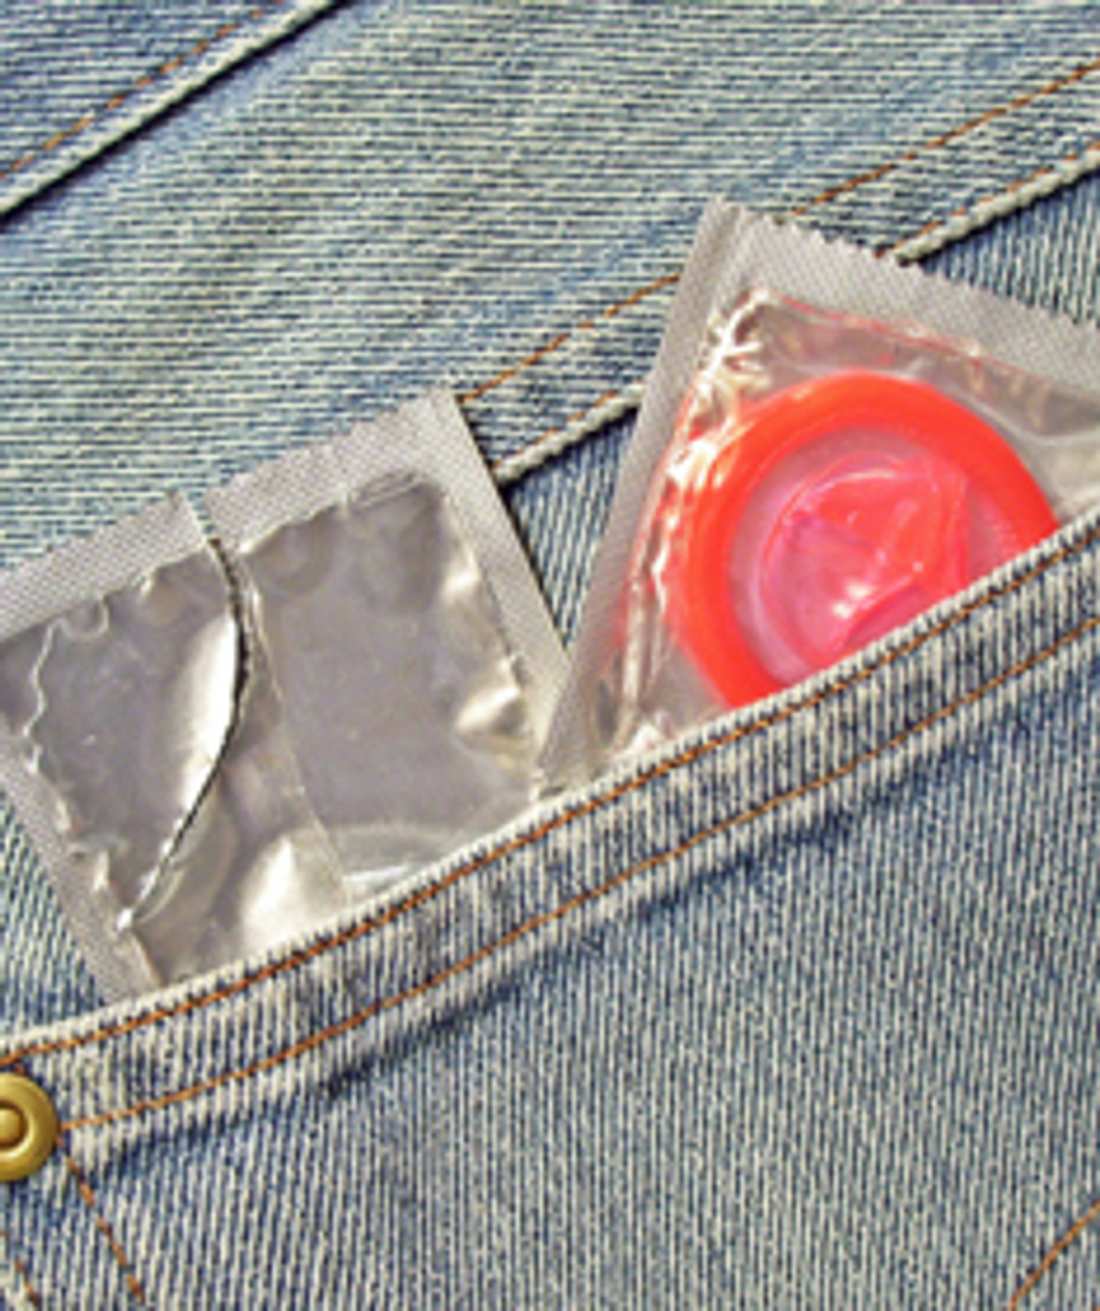 Kondom geht nicht über die Eichel!